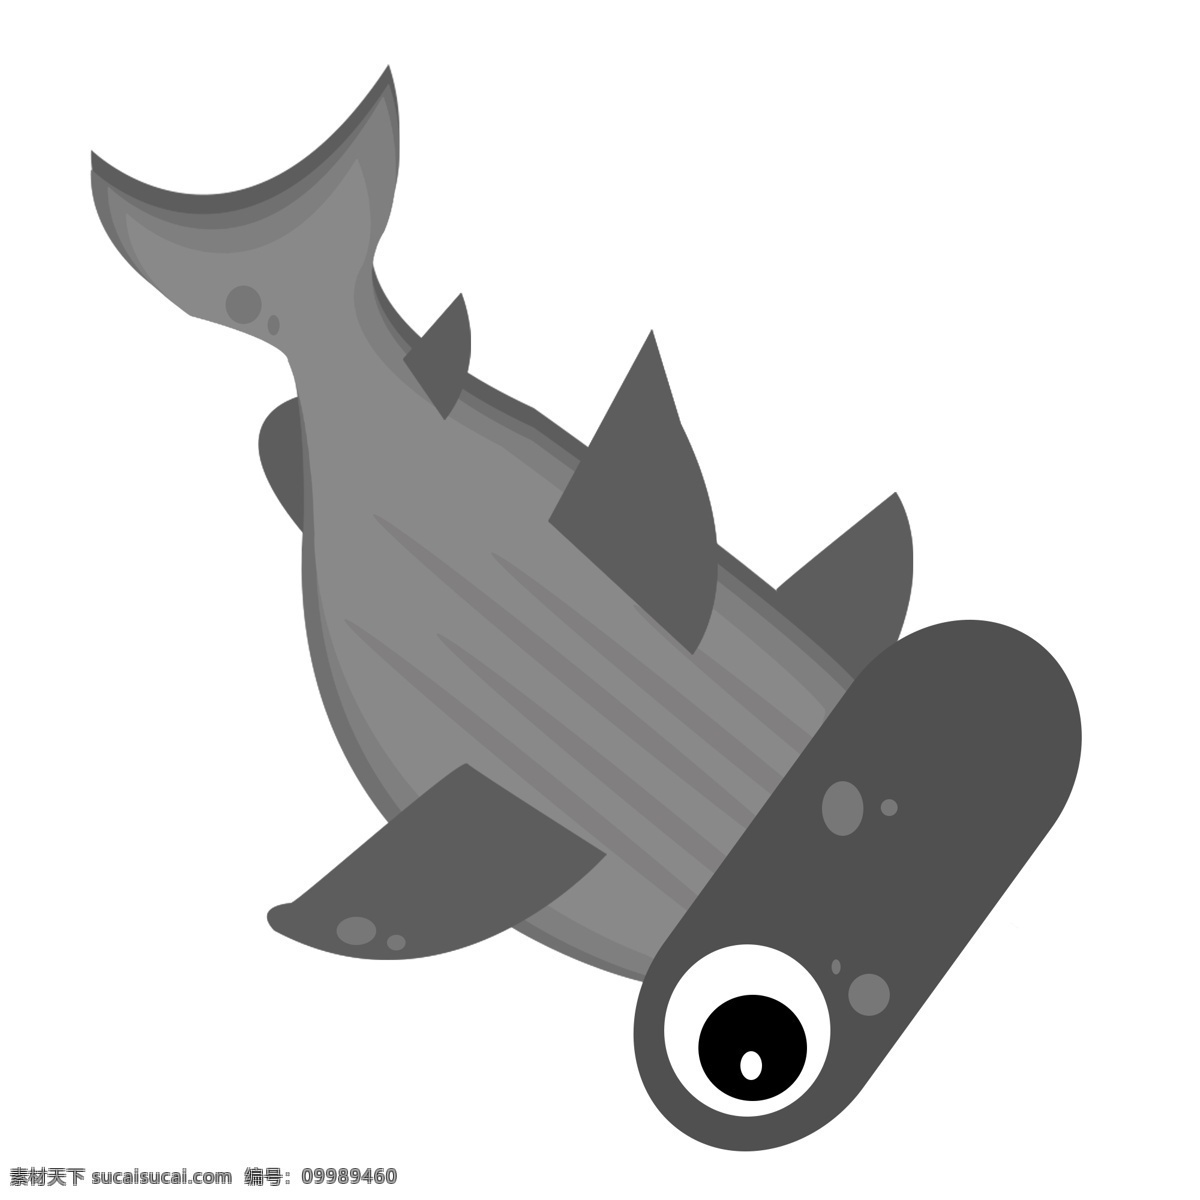 黑色海洋小鱼 鱼类 动物 海洋生物